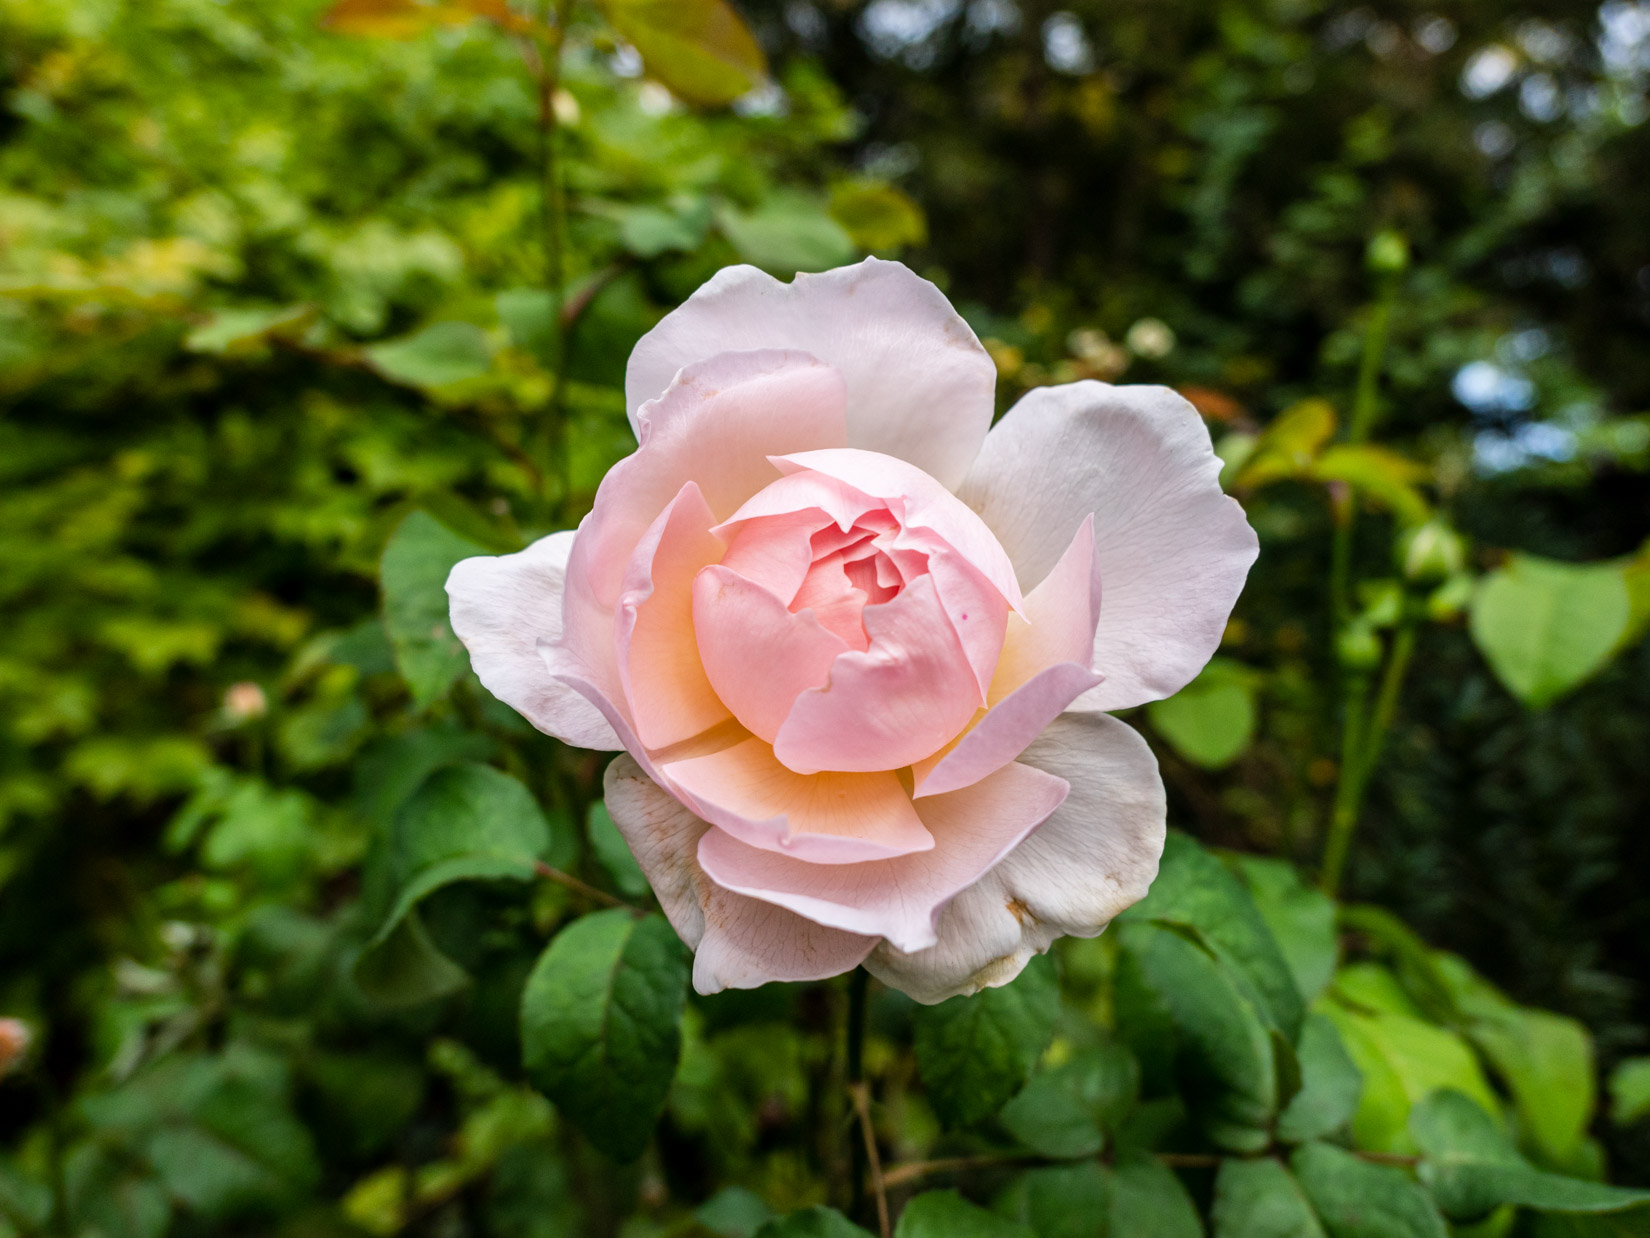 Pink Flower in Garden